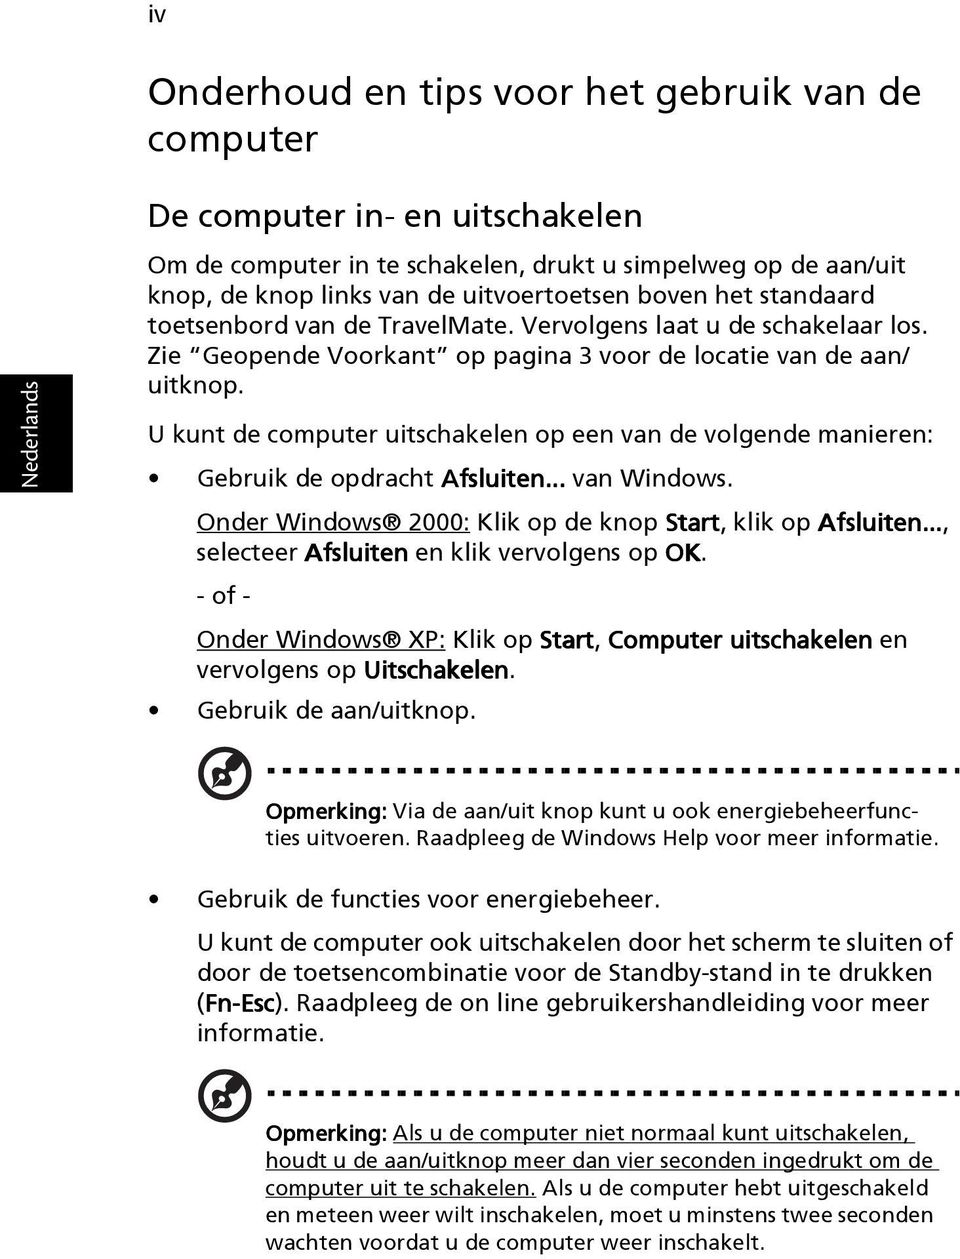 U kunt de computer uitschakelen op een van de volgende manieren: Gebruik de opdracht Afsluiten... van Windows. Onder Windows 2000: Klik op de knop Start, klik op Afsluiten.